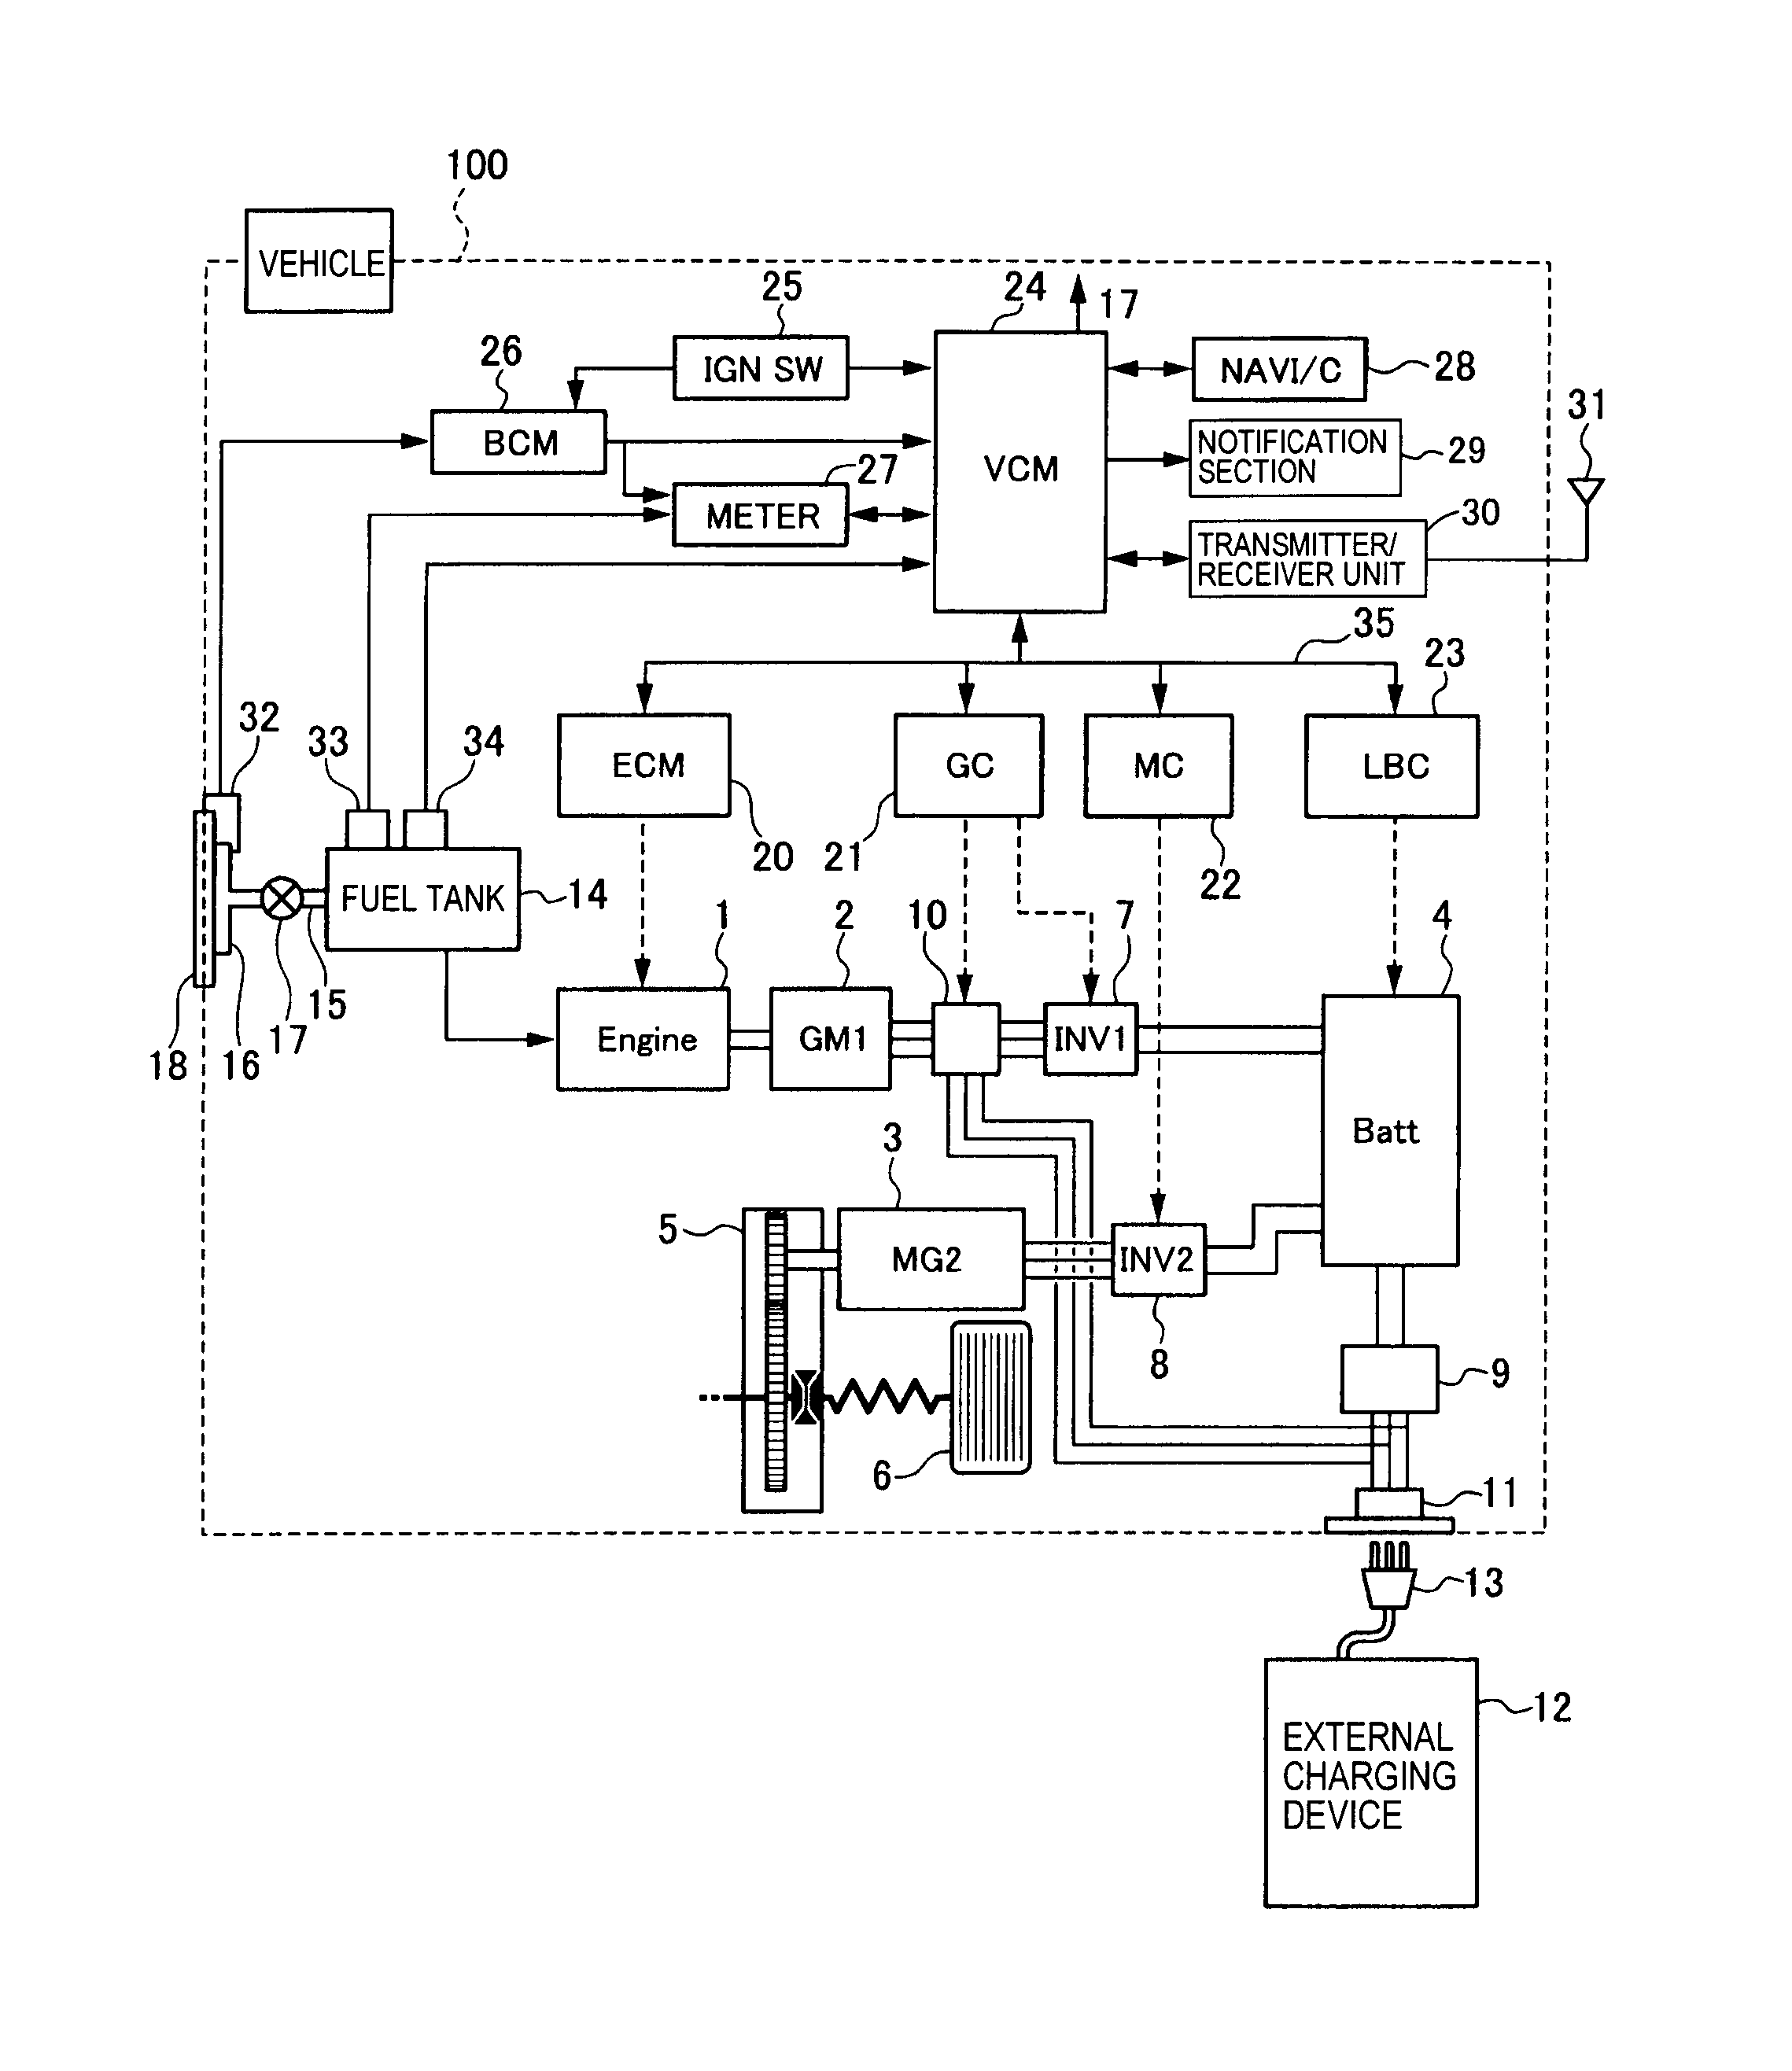 alpine ktp-445 wiring diagram